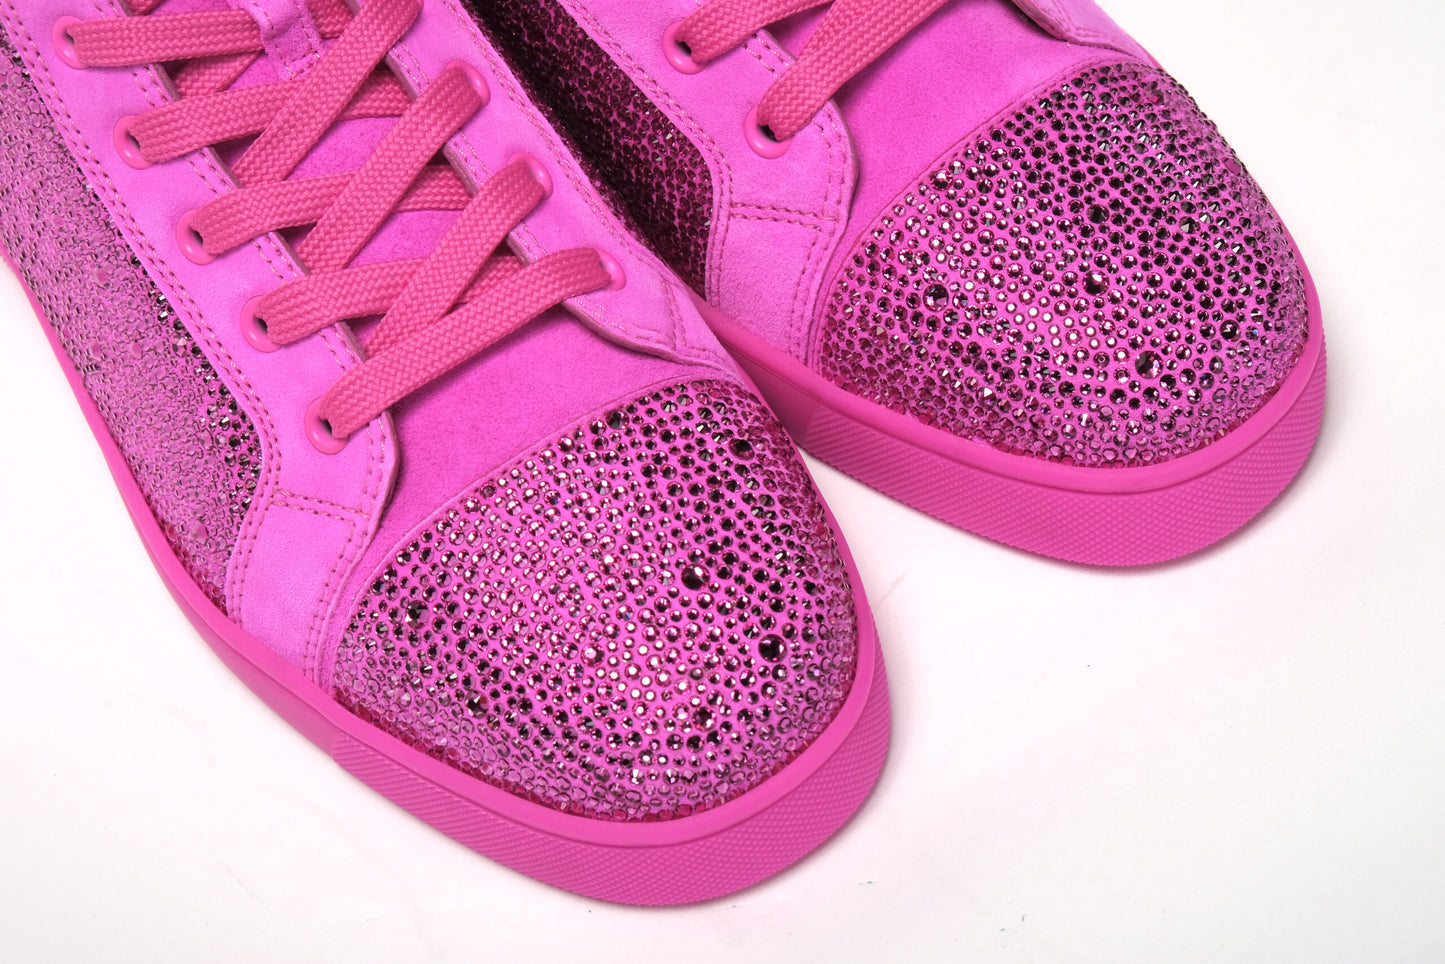 Diva Hot Pink Louis Flat Veau Shoes